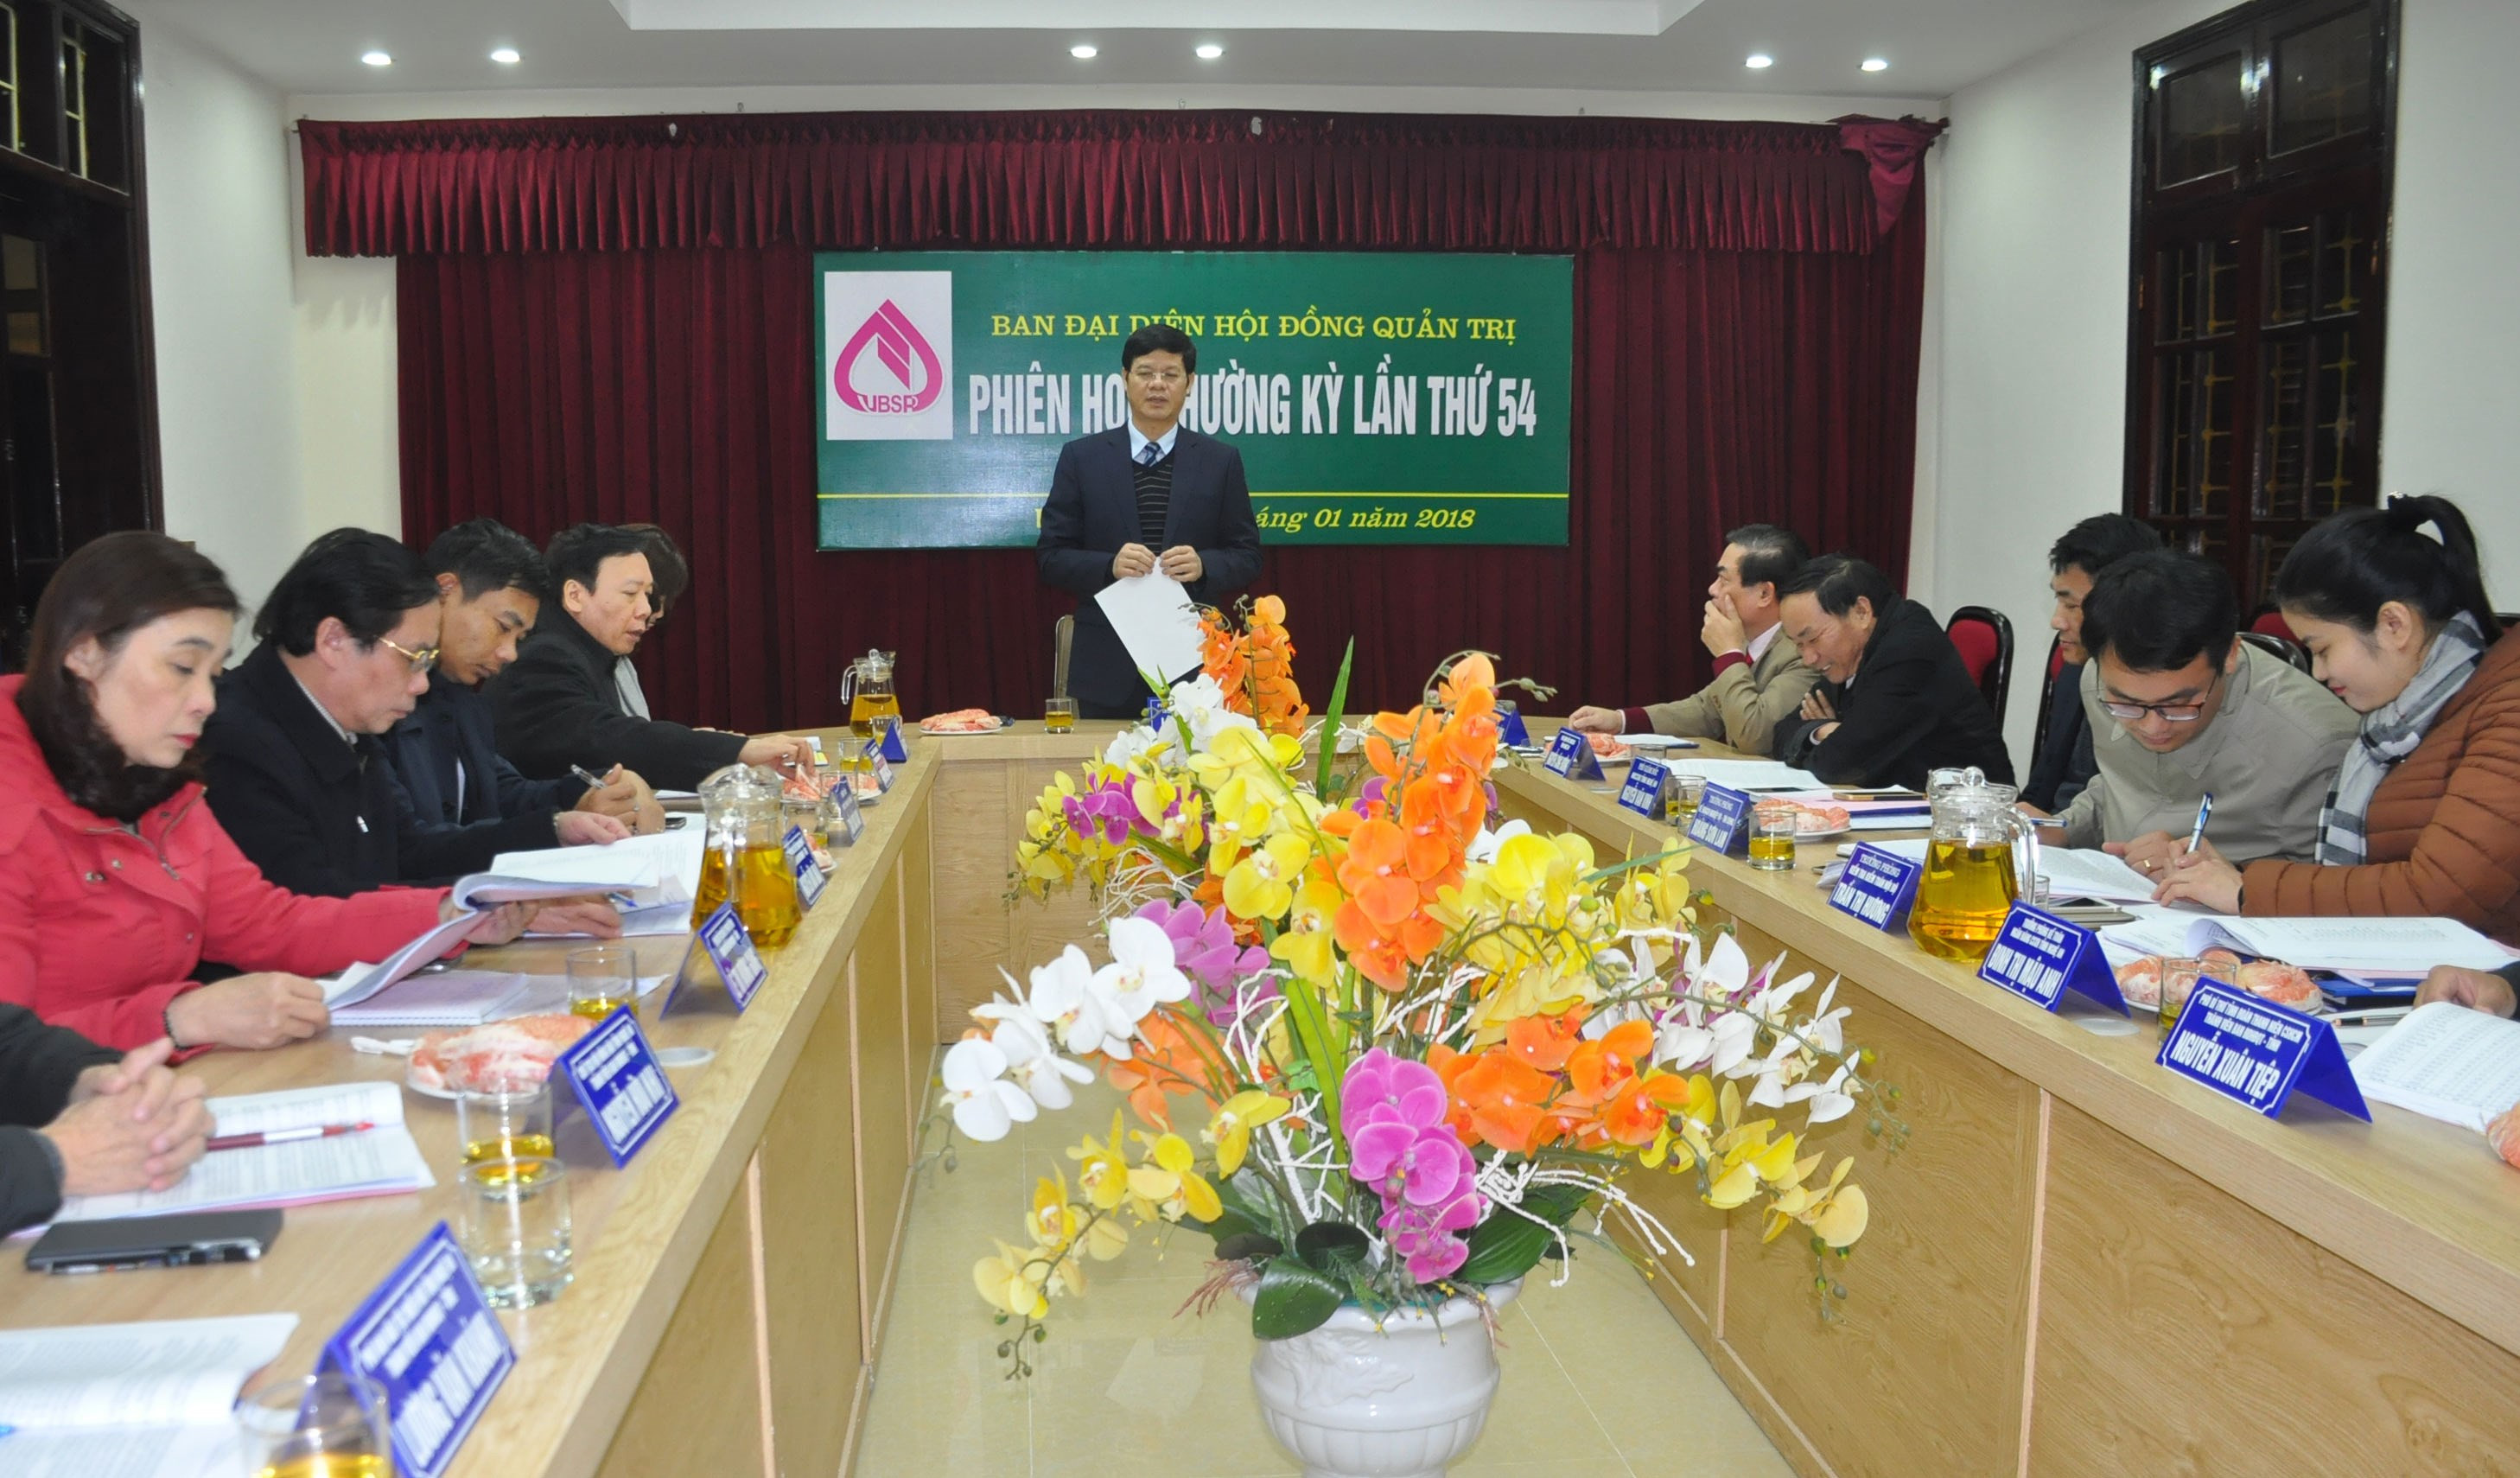 Đồng chí phó Chủ tịch UBND tỉnh Lê Xuân Đại chủ trì cuộc họp. Ảnh: Thu Huyền